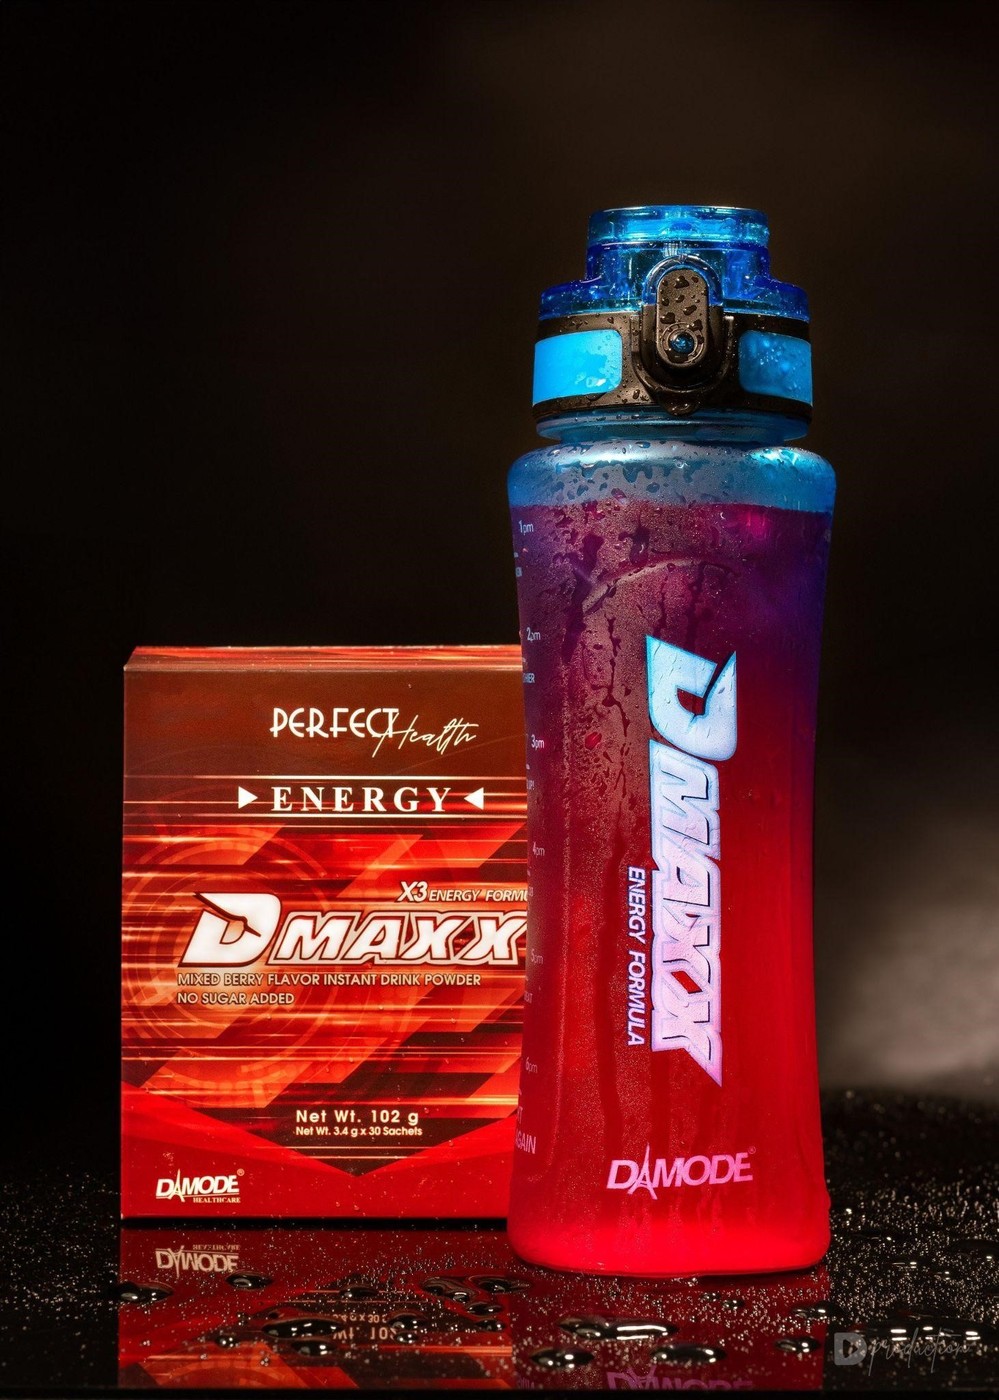 Dmaxx - Thức uống đang được yêu thích với công dụng bổ sung năng lượng - Ảnh 1.